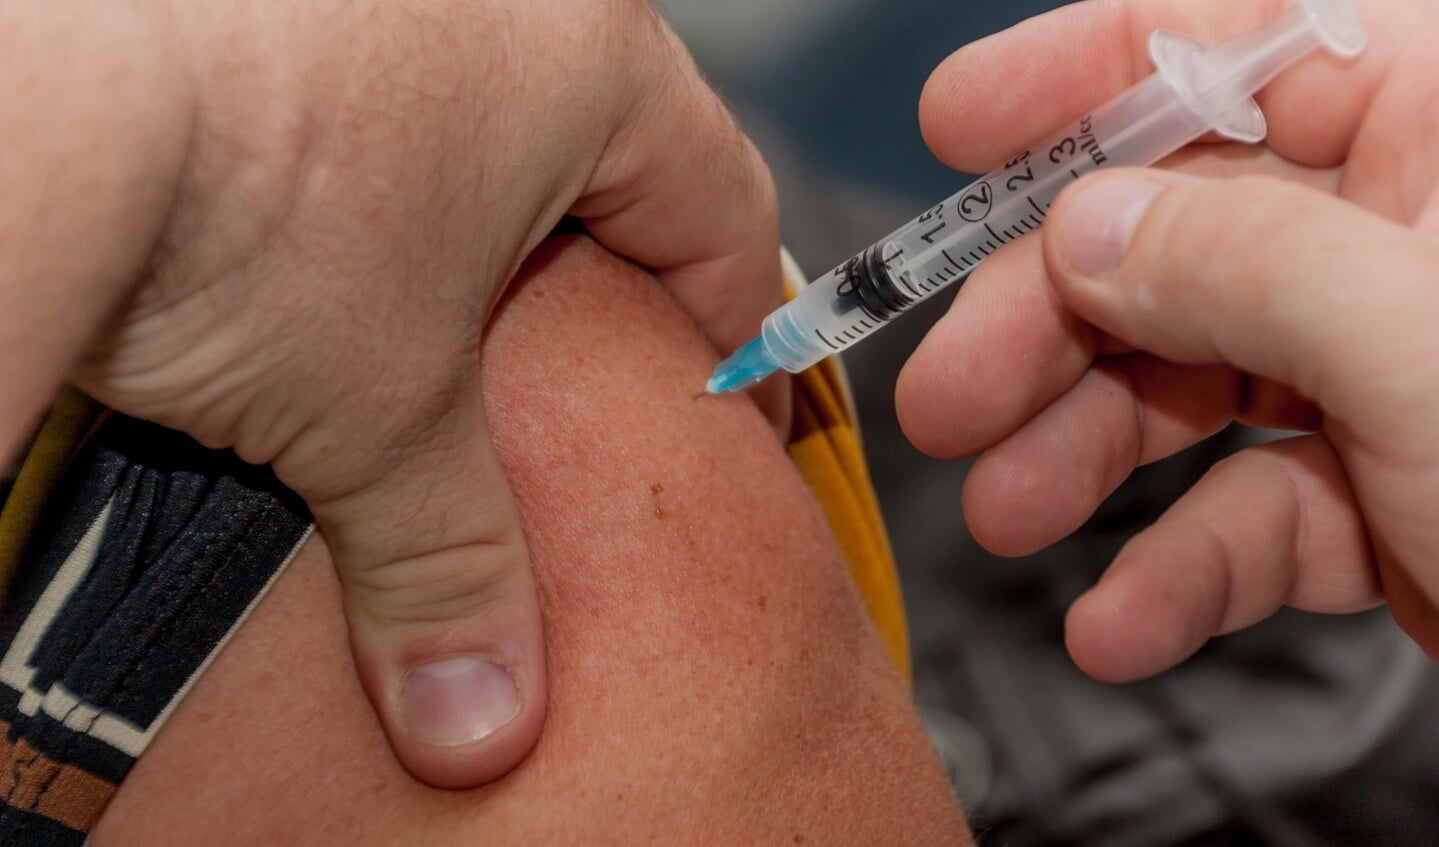 Huisartsen vrezen drukte vanwege vaccinatiecampagne najaar.